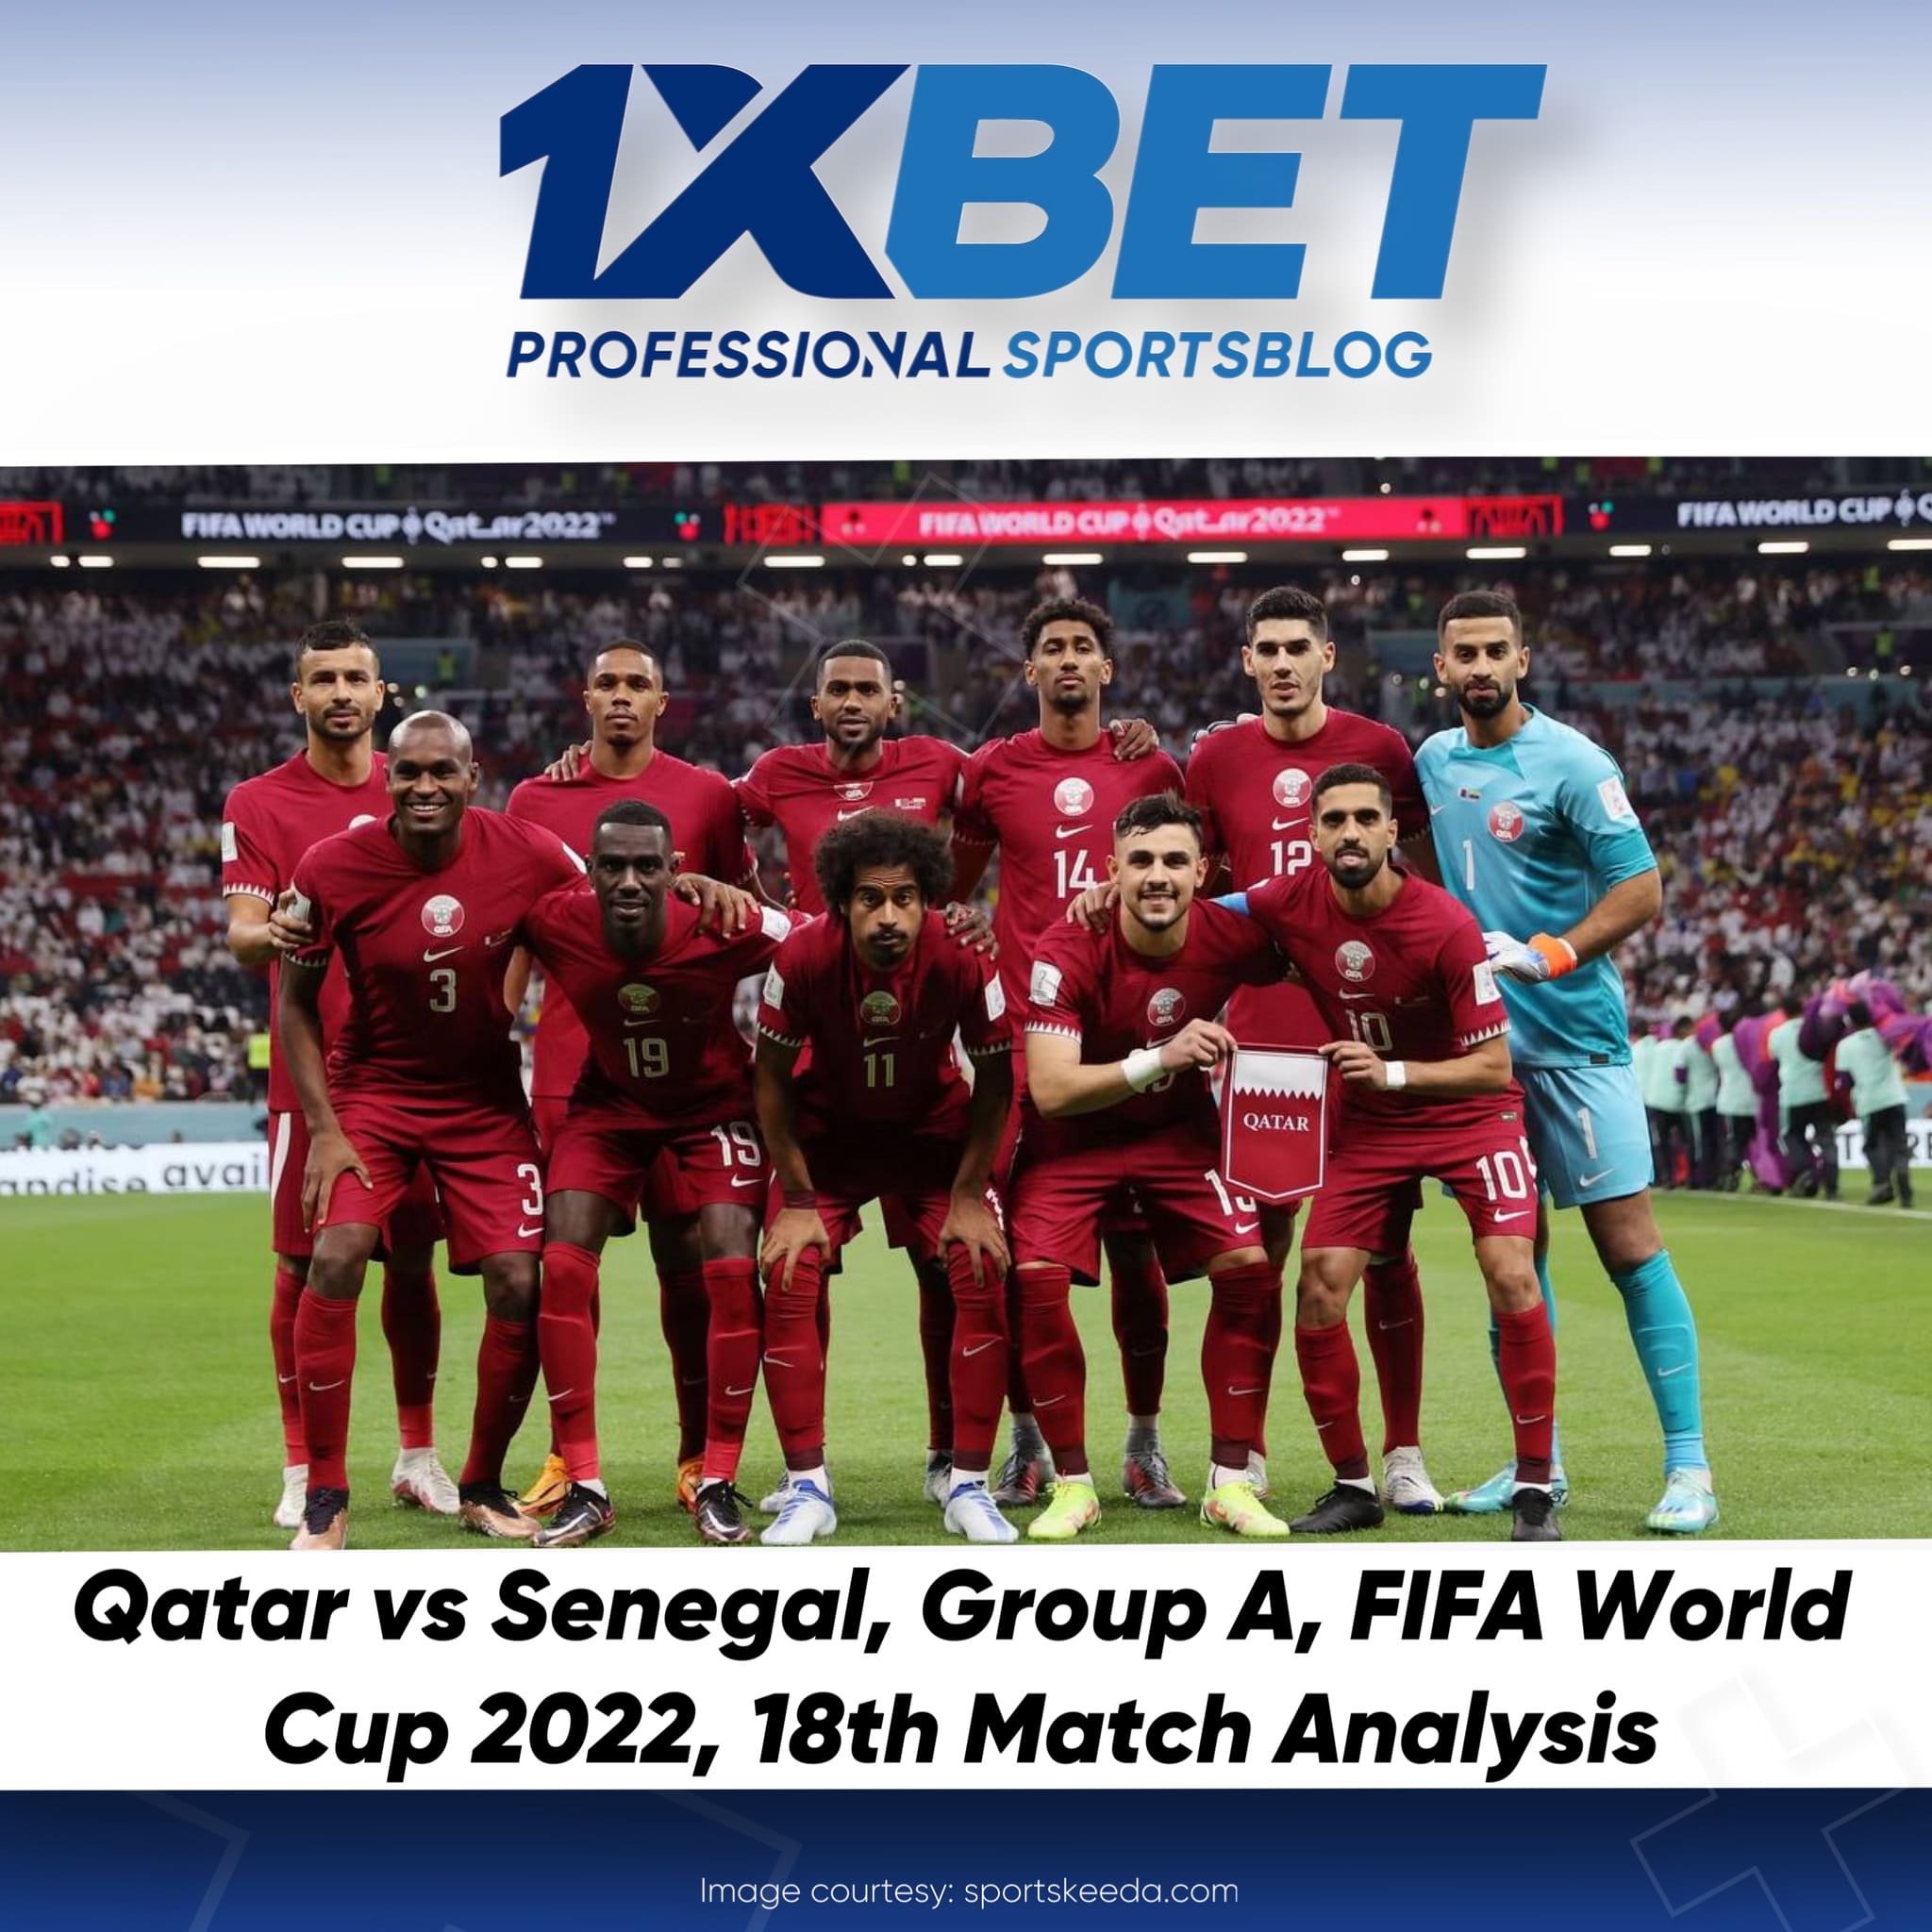 Qatar vs Senegal, Group A, FIFA World Cup 2022, 18th Match Analysis